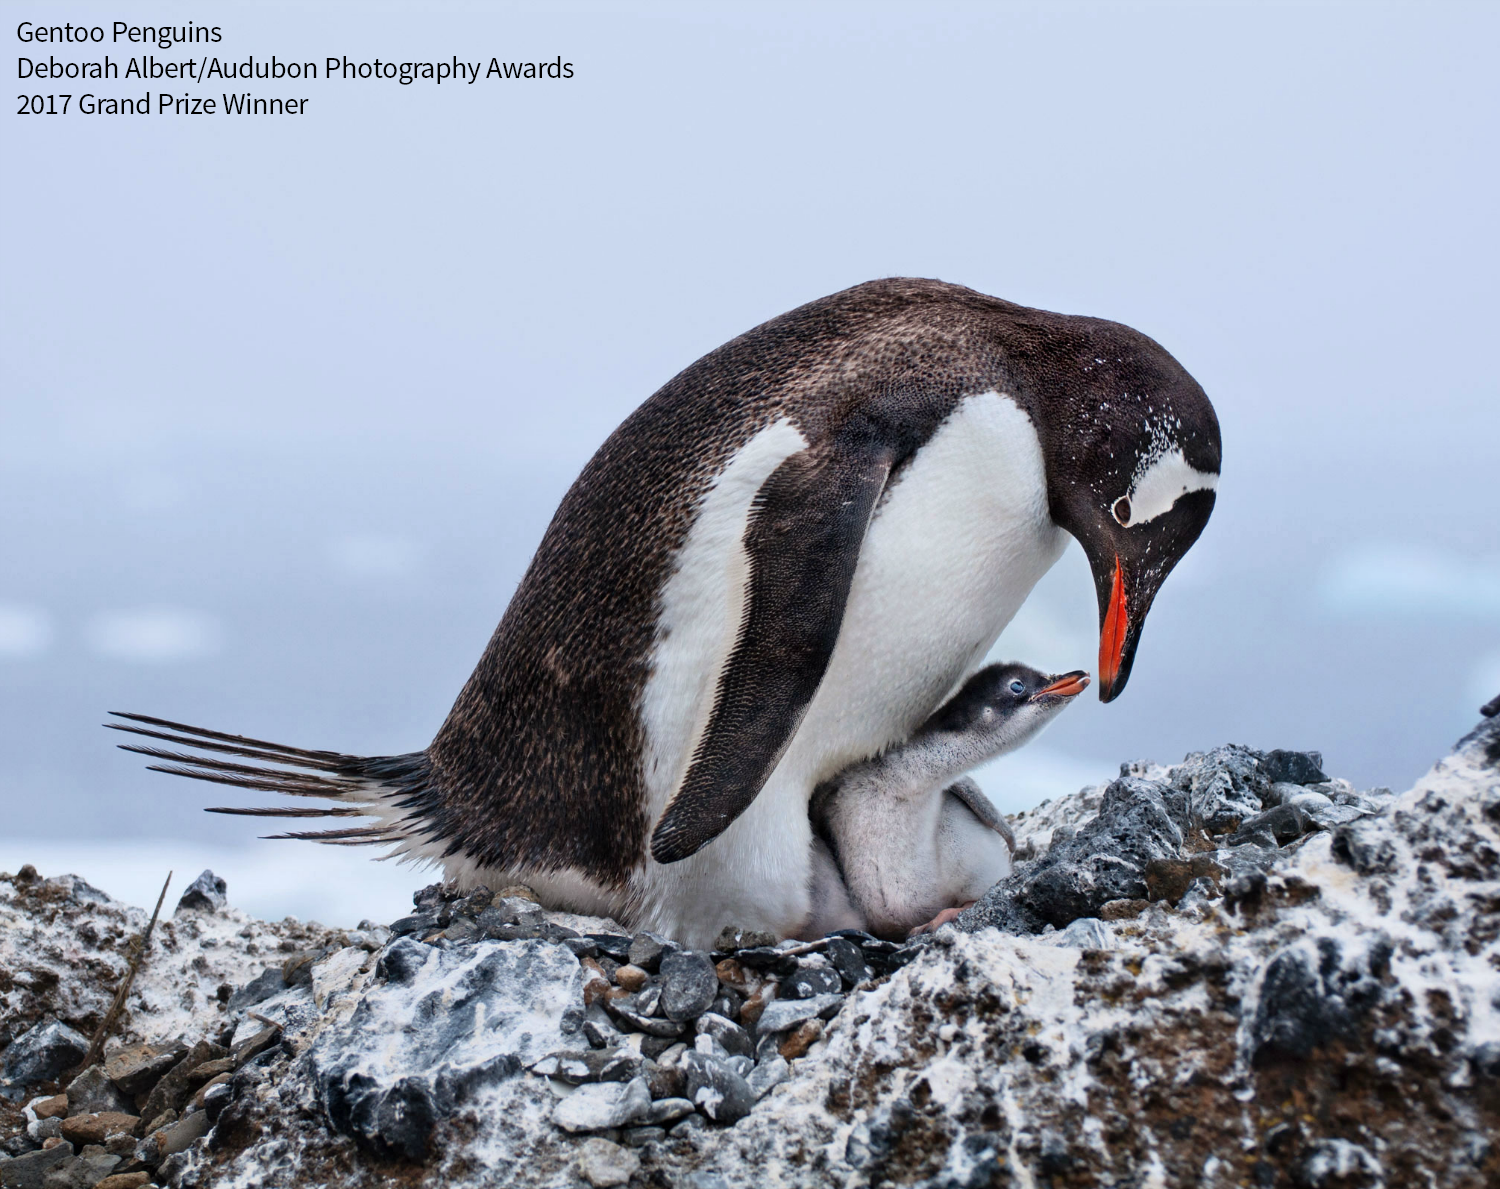 Gentoo Penguins. Photo: Deborah Albert/Audubon Photography Awards